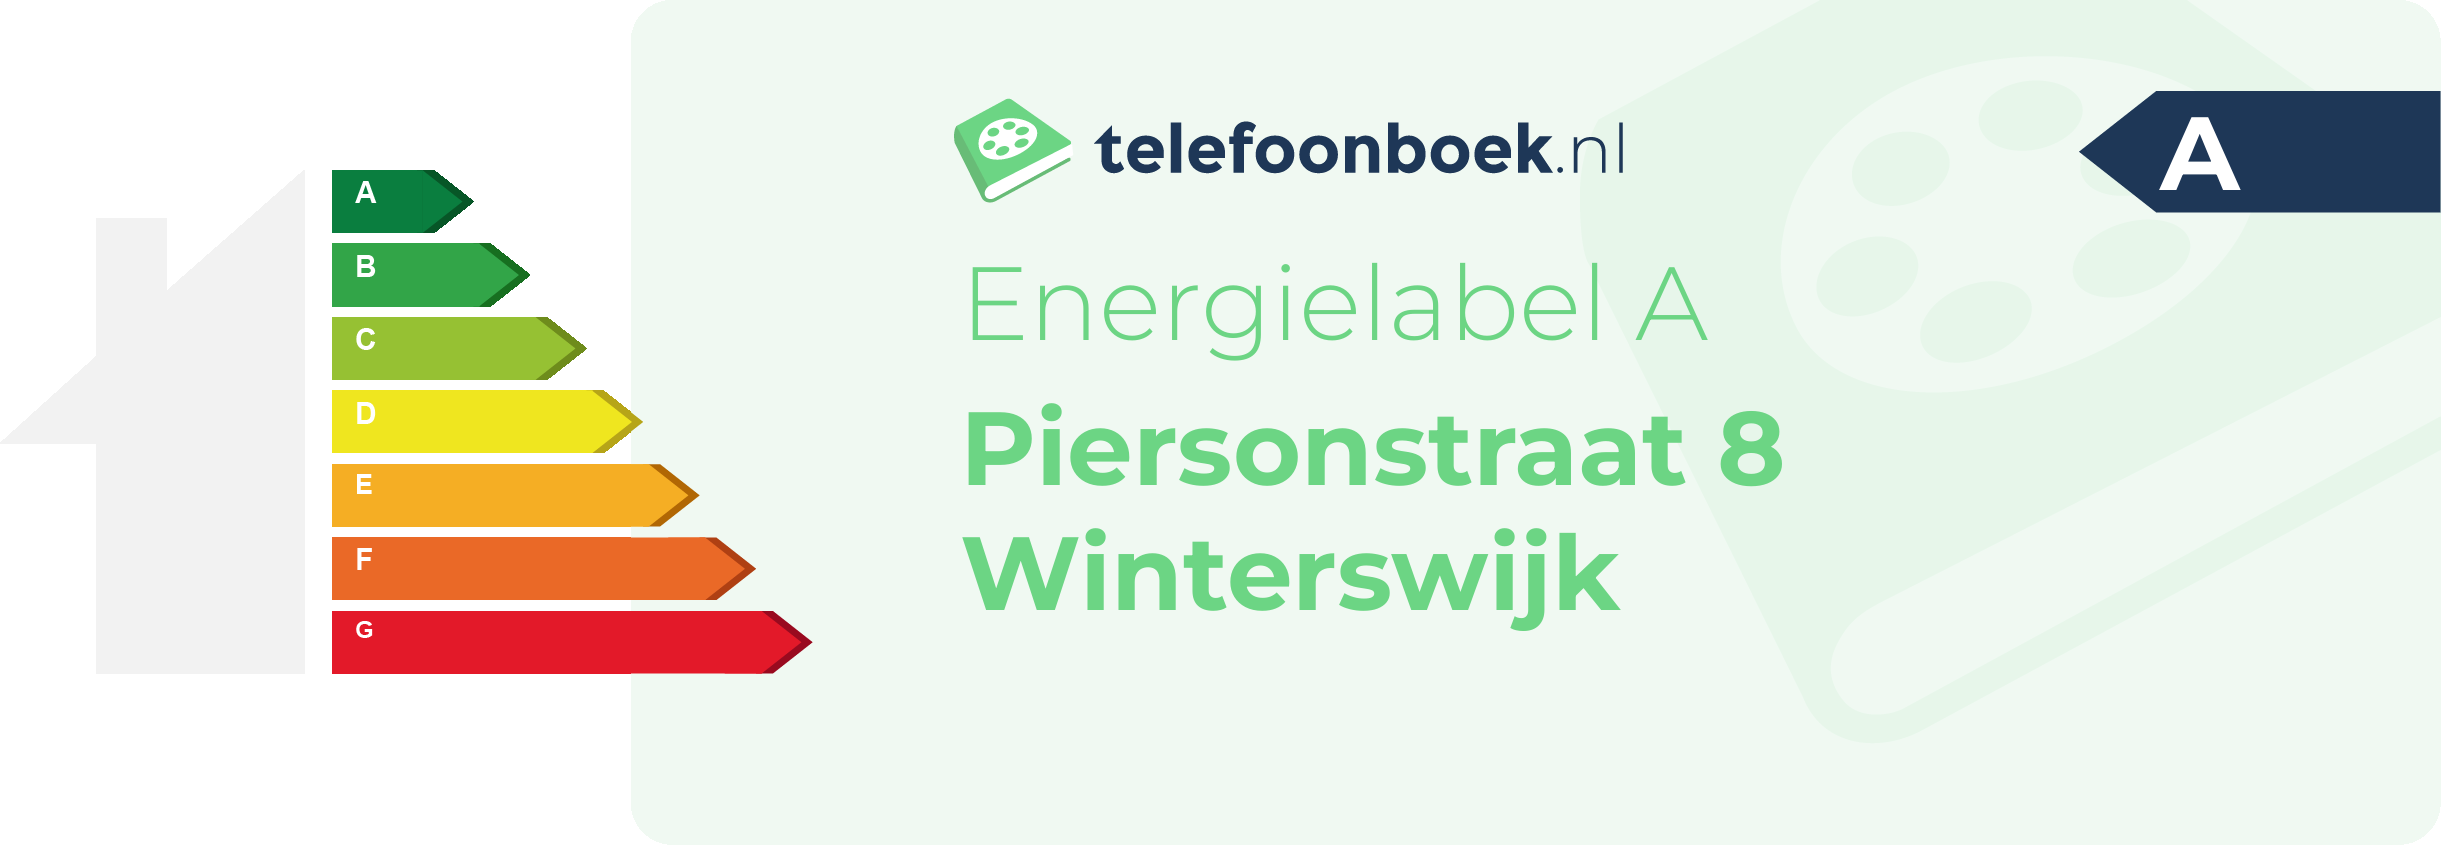 Energielabel Piersonstraat 8 Winterswijk